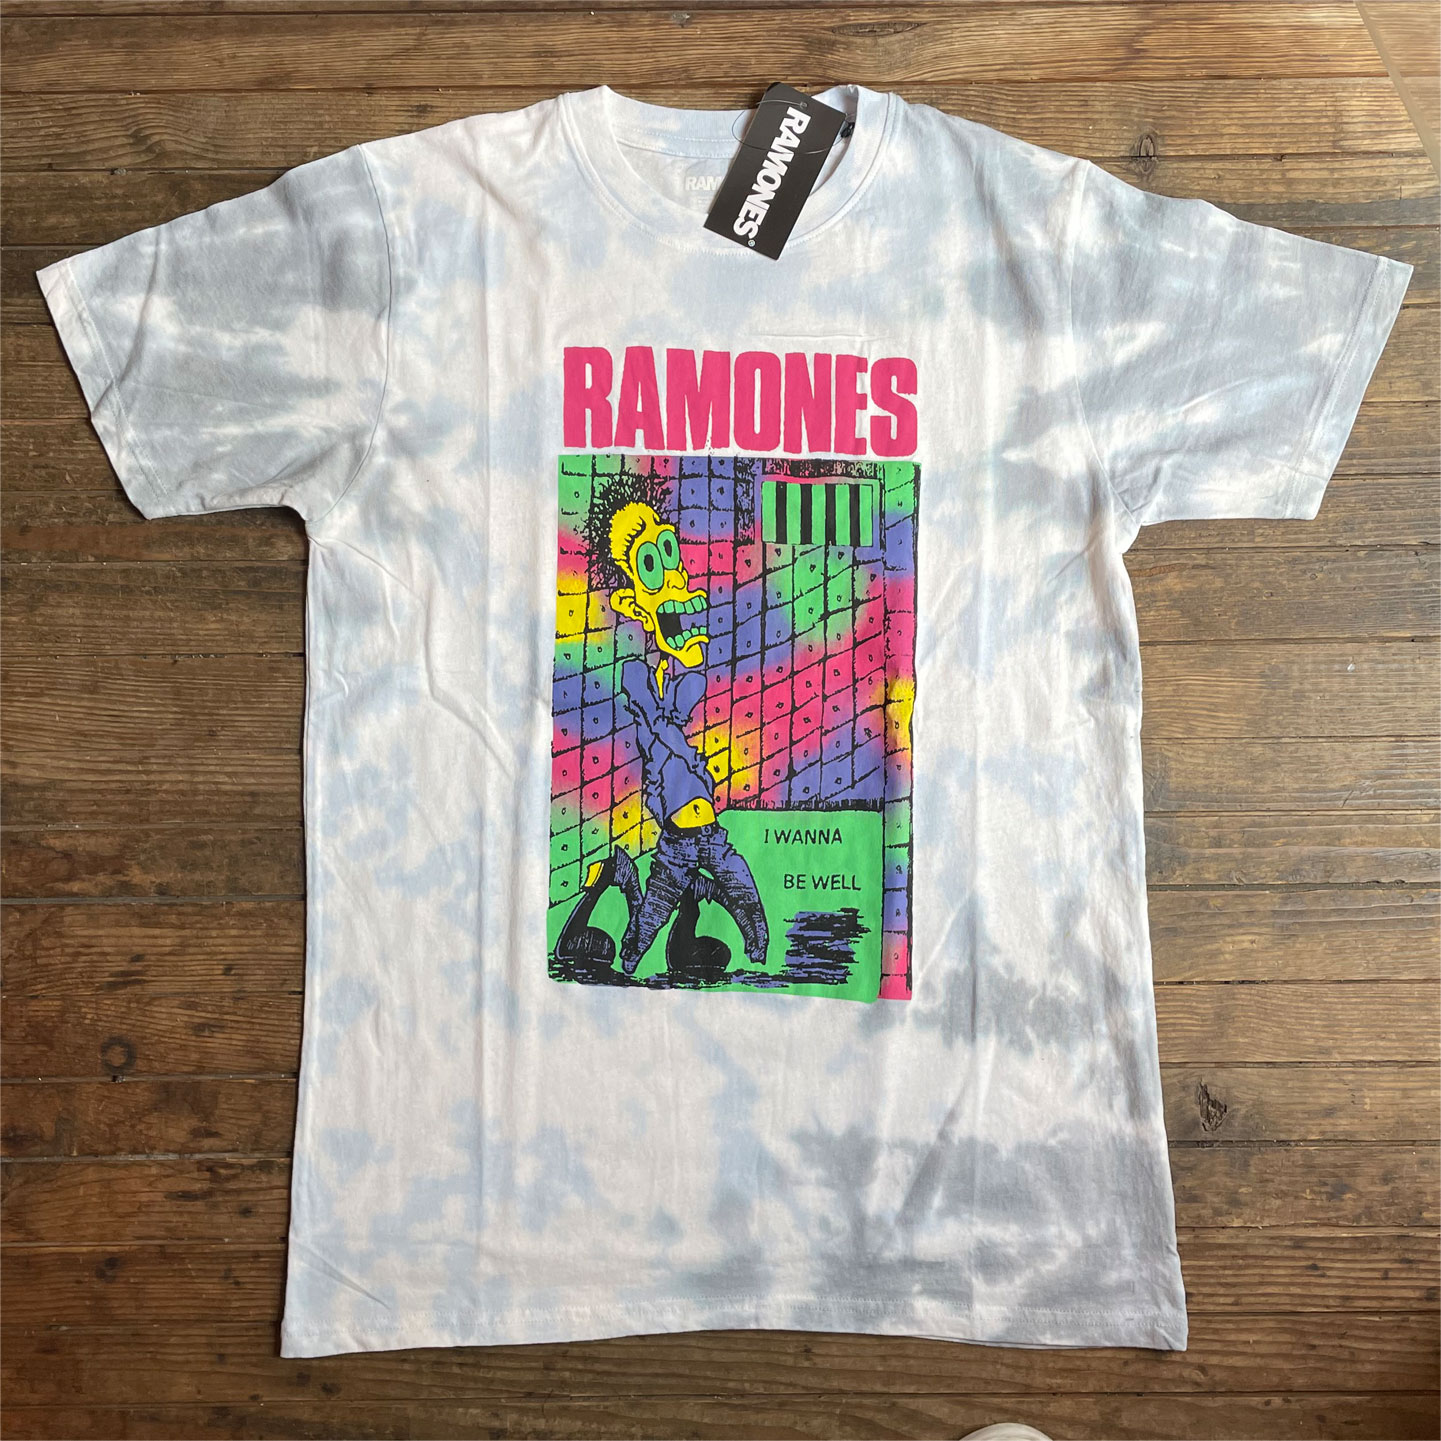 RAMONES Tシャツ TIE-DYE I WANNA BE WELL